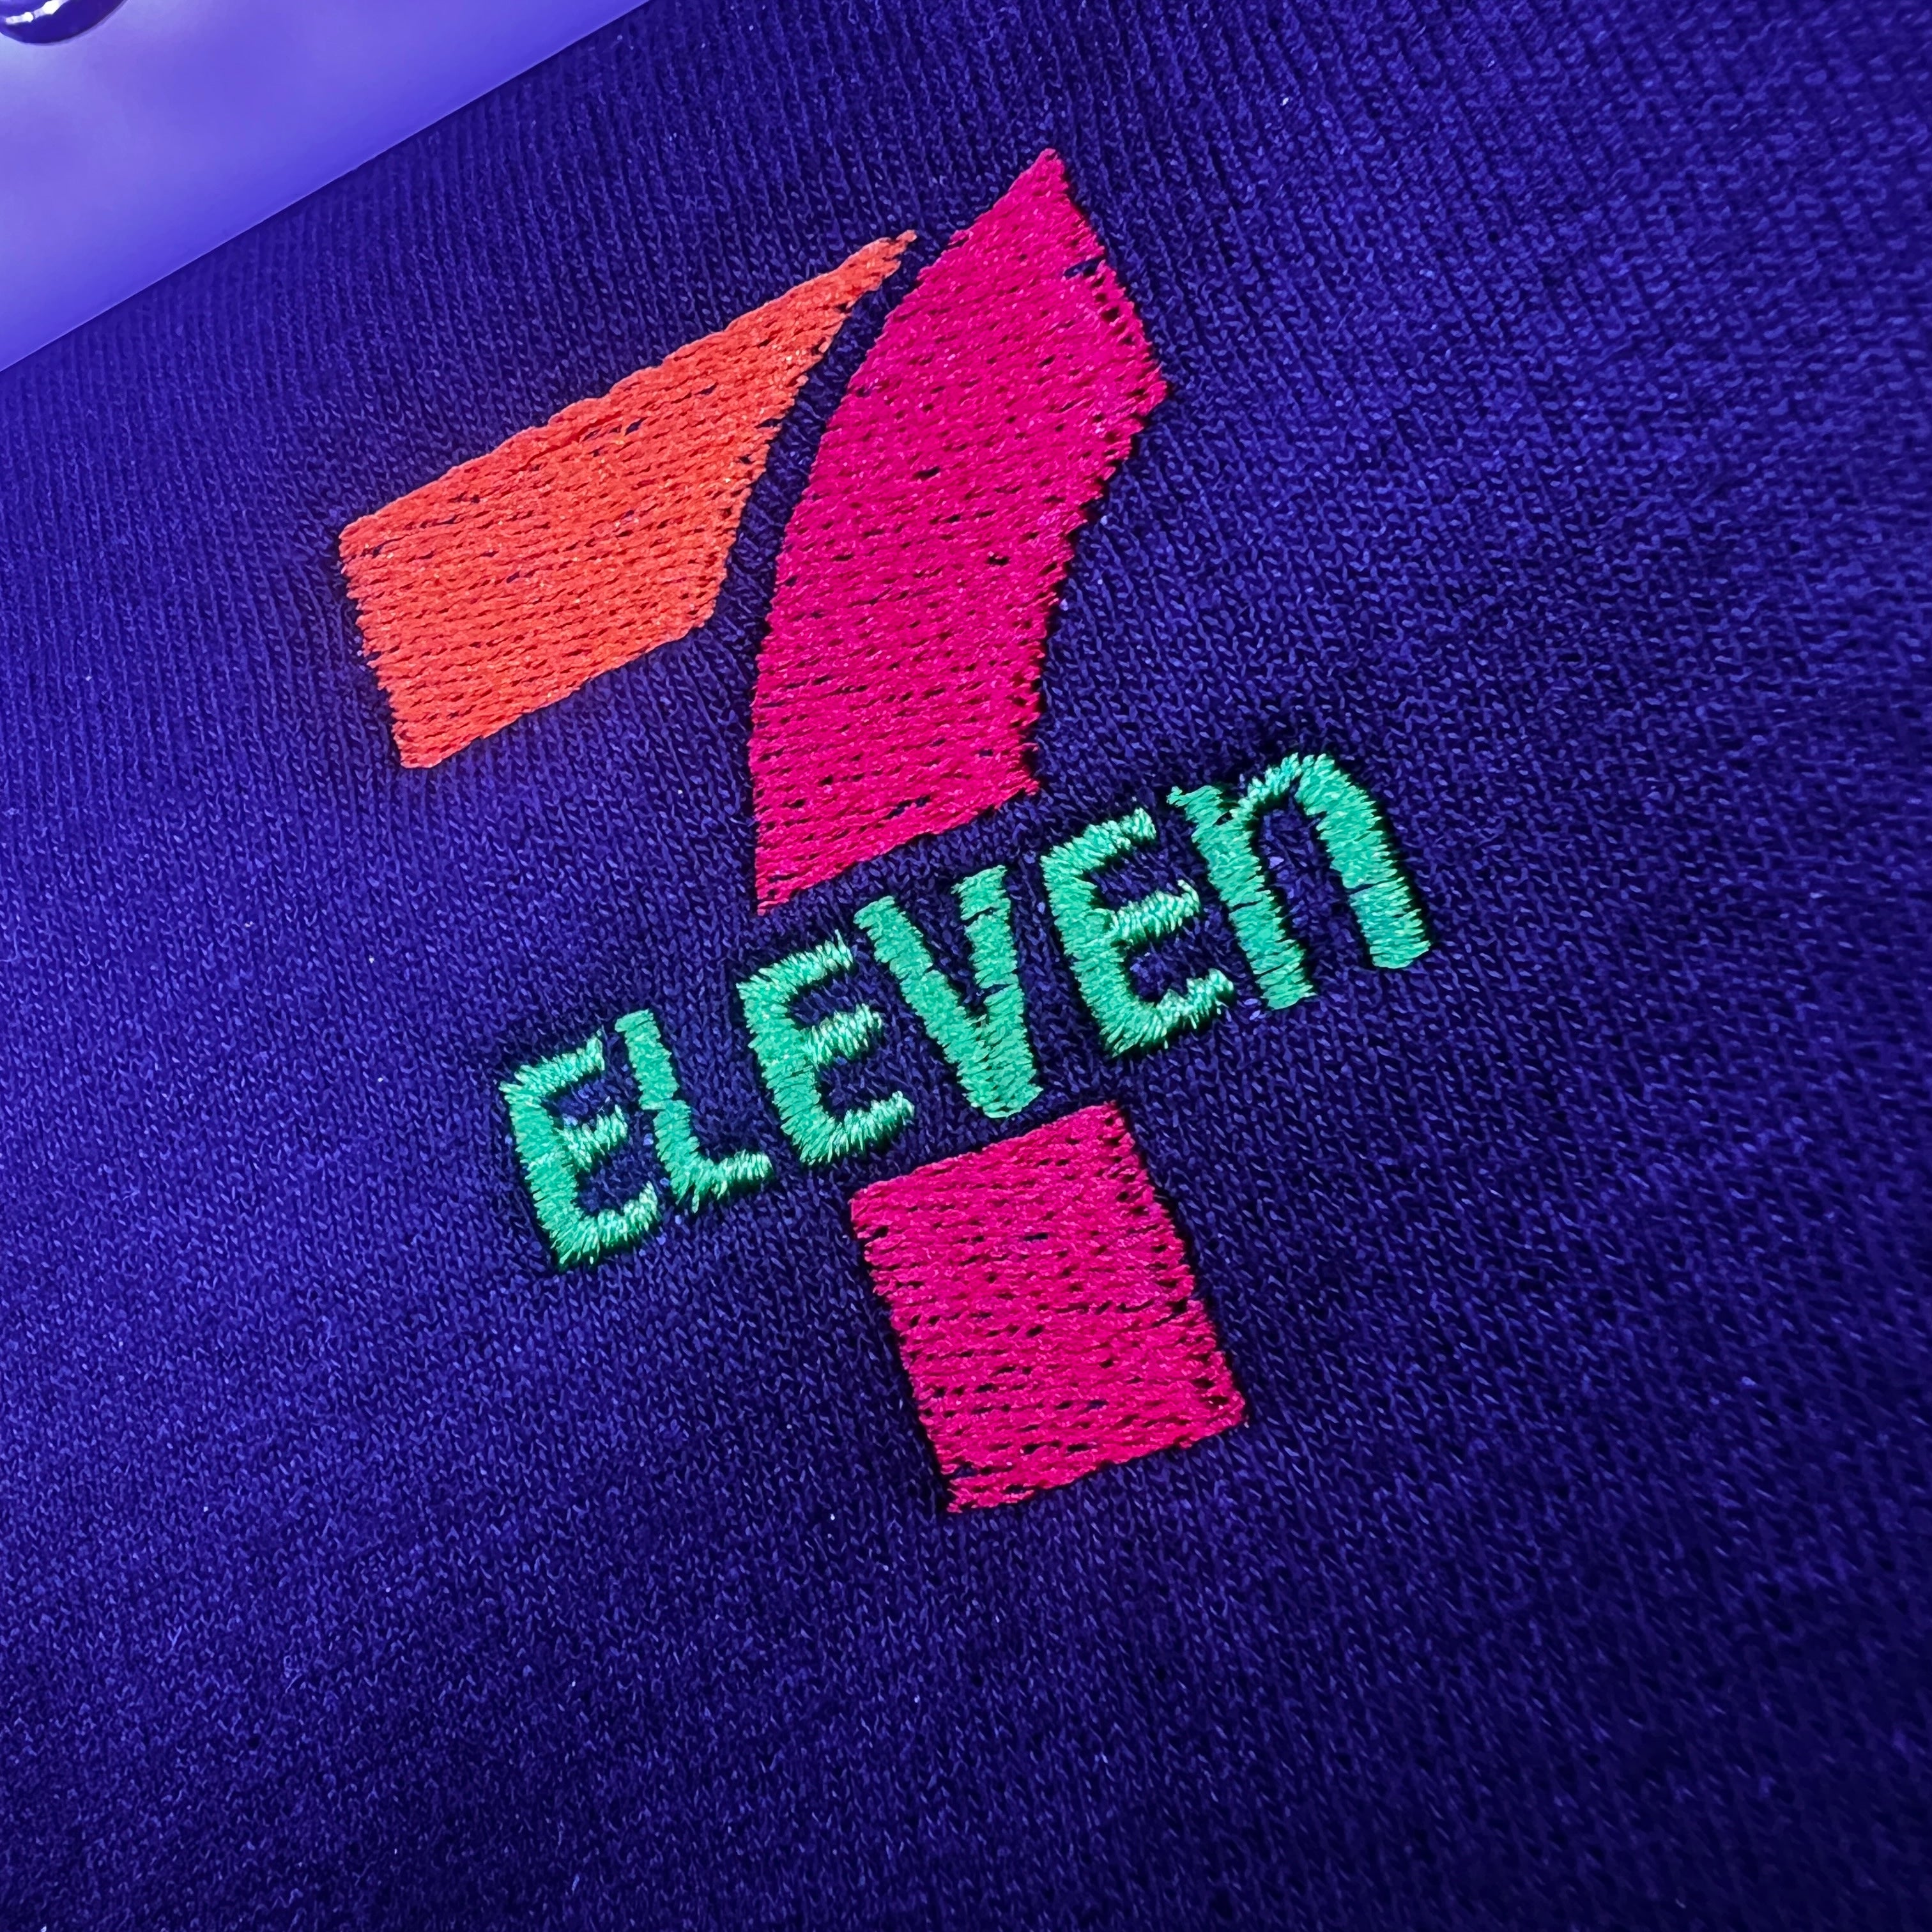 .PES 7 Eleven Embroidery Design File